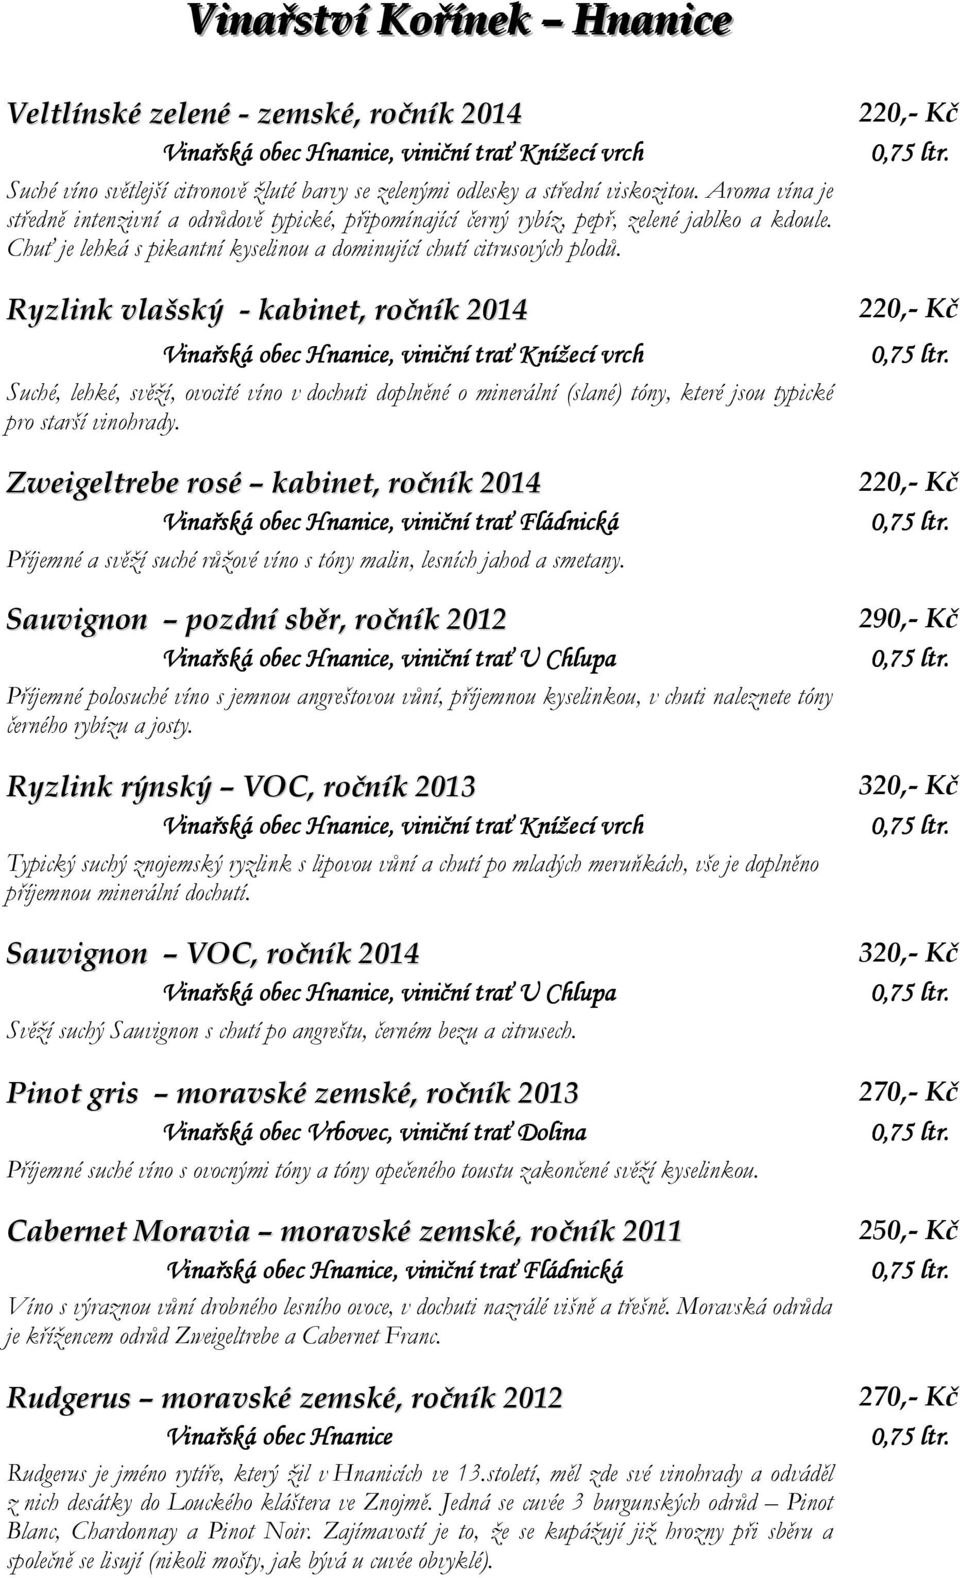 Ryzlink vlašský - kabinet, ročník 2014 Suché, lehké, svěží, ovocité víno v dochuti doplněné o minerální (slané) tóny, které jsou typické pro starší vinohrady.